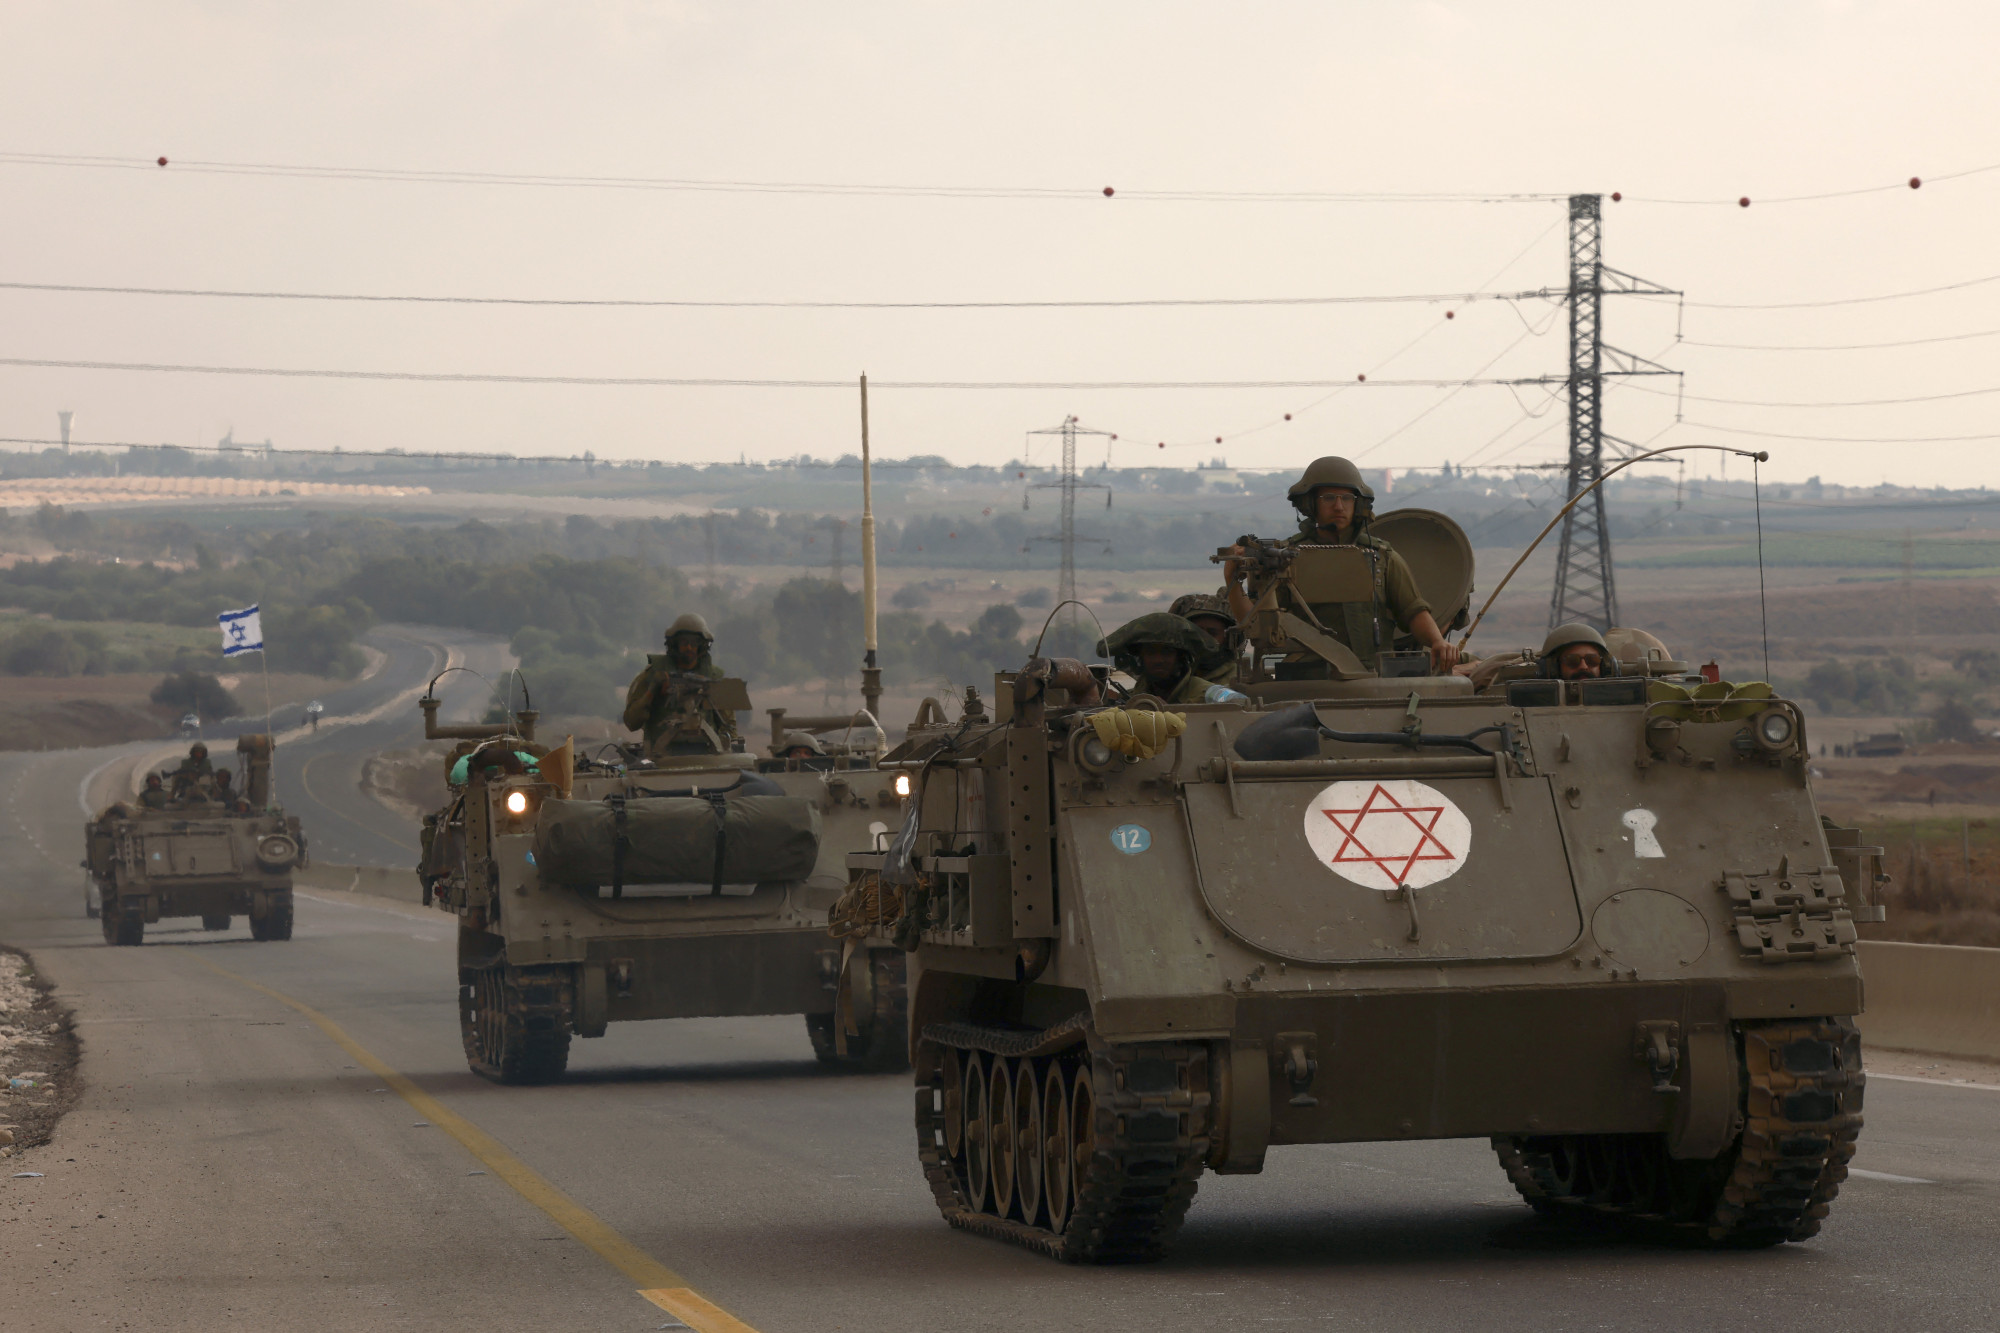 Mindenki szárazföldi offenzívát vár, de lehet, hogy valami egészen másra készül az izraeli hadsereg